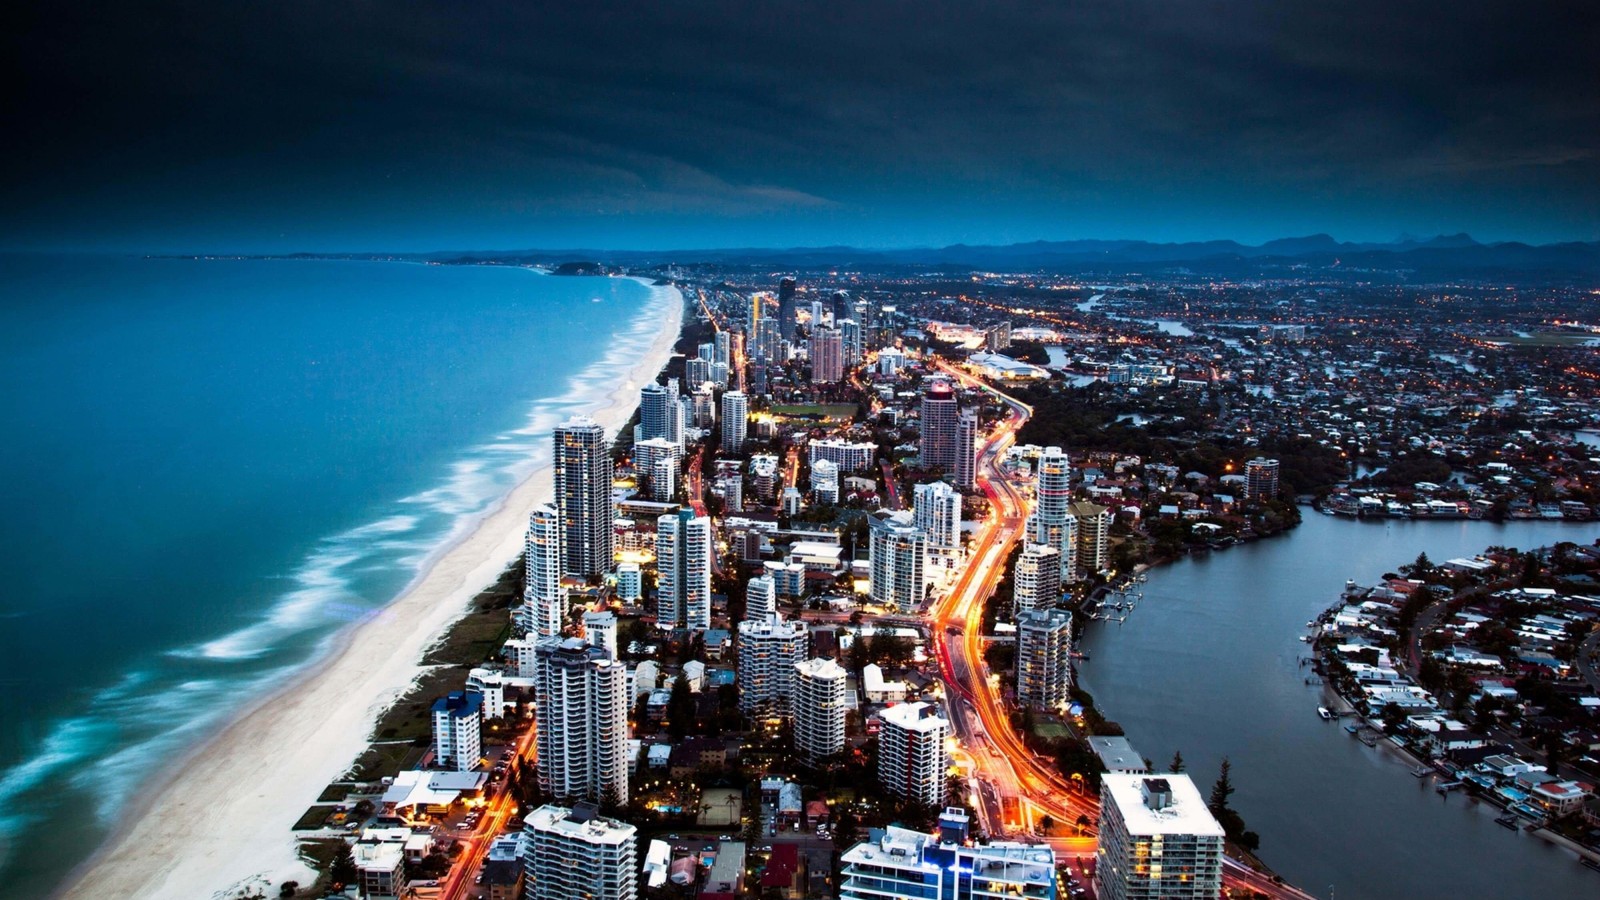 Gold Coast City in Queensland, Australia Wallpaper for Desktop 1600x900